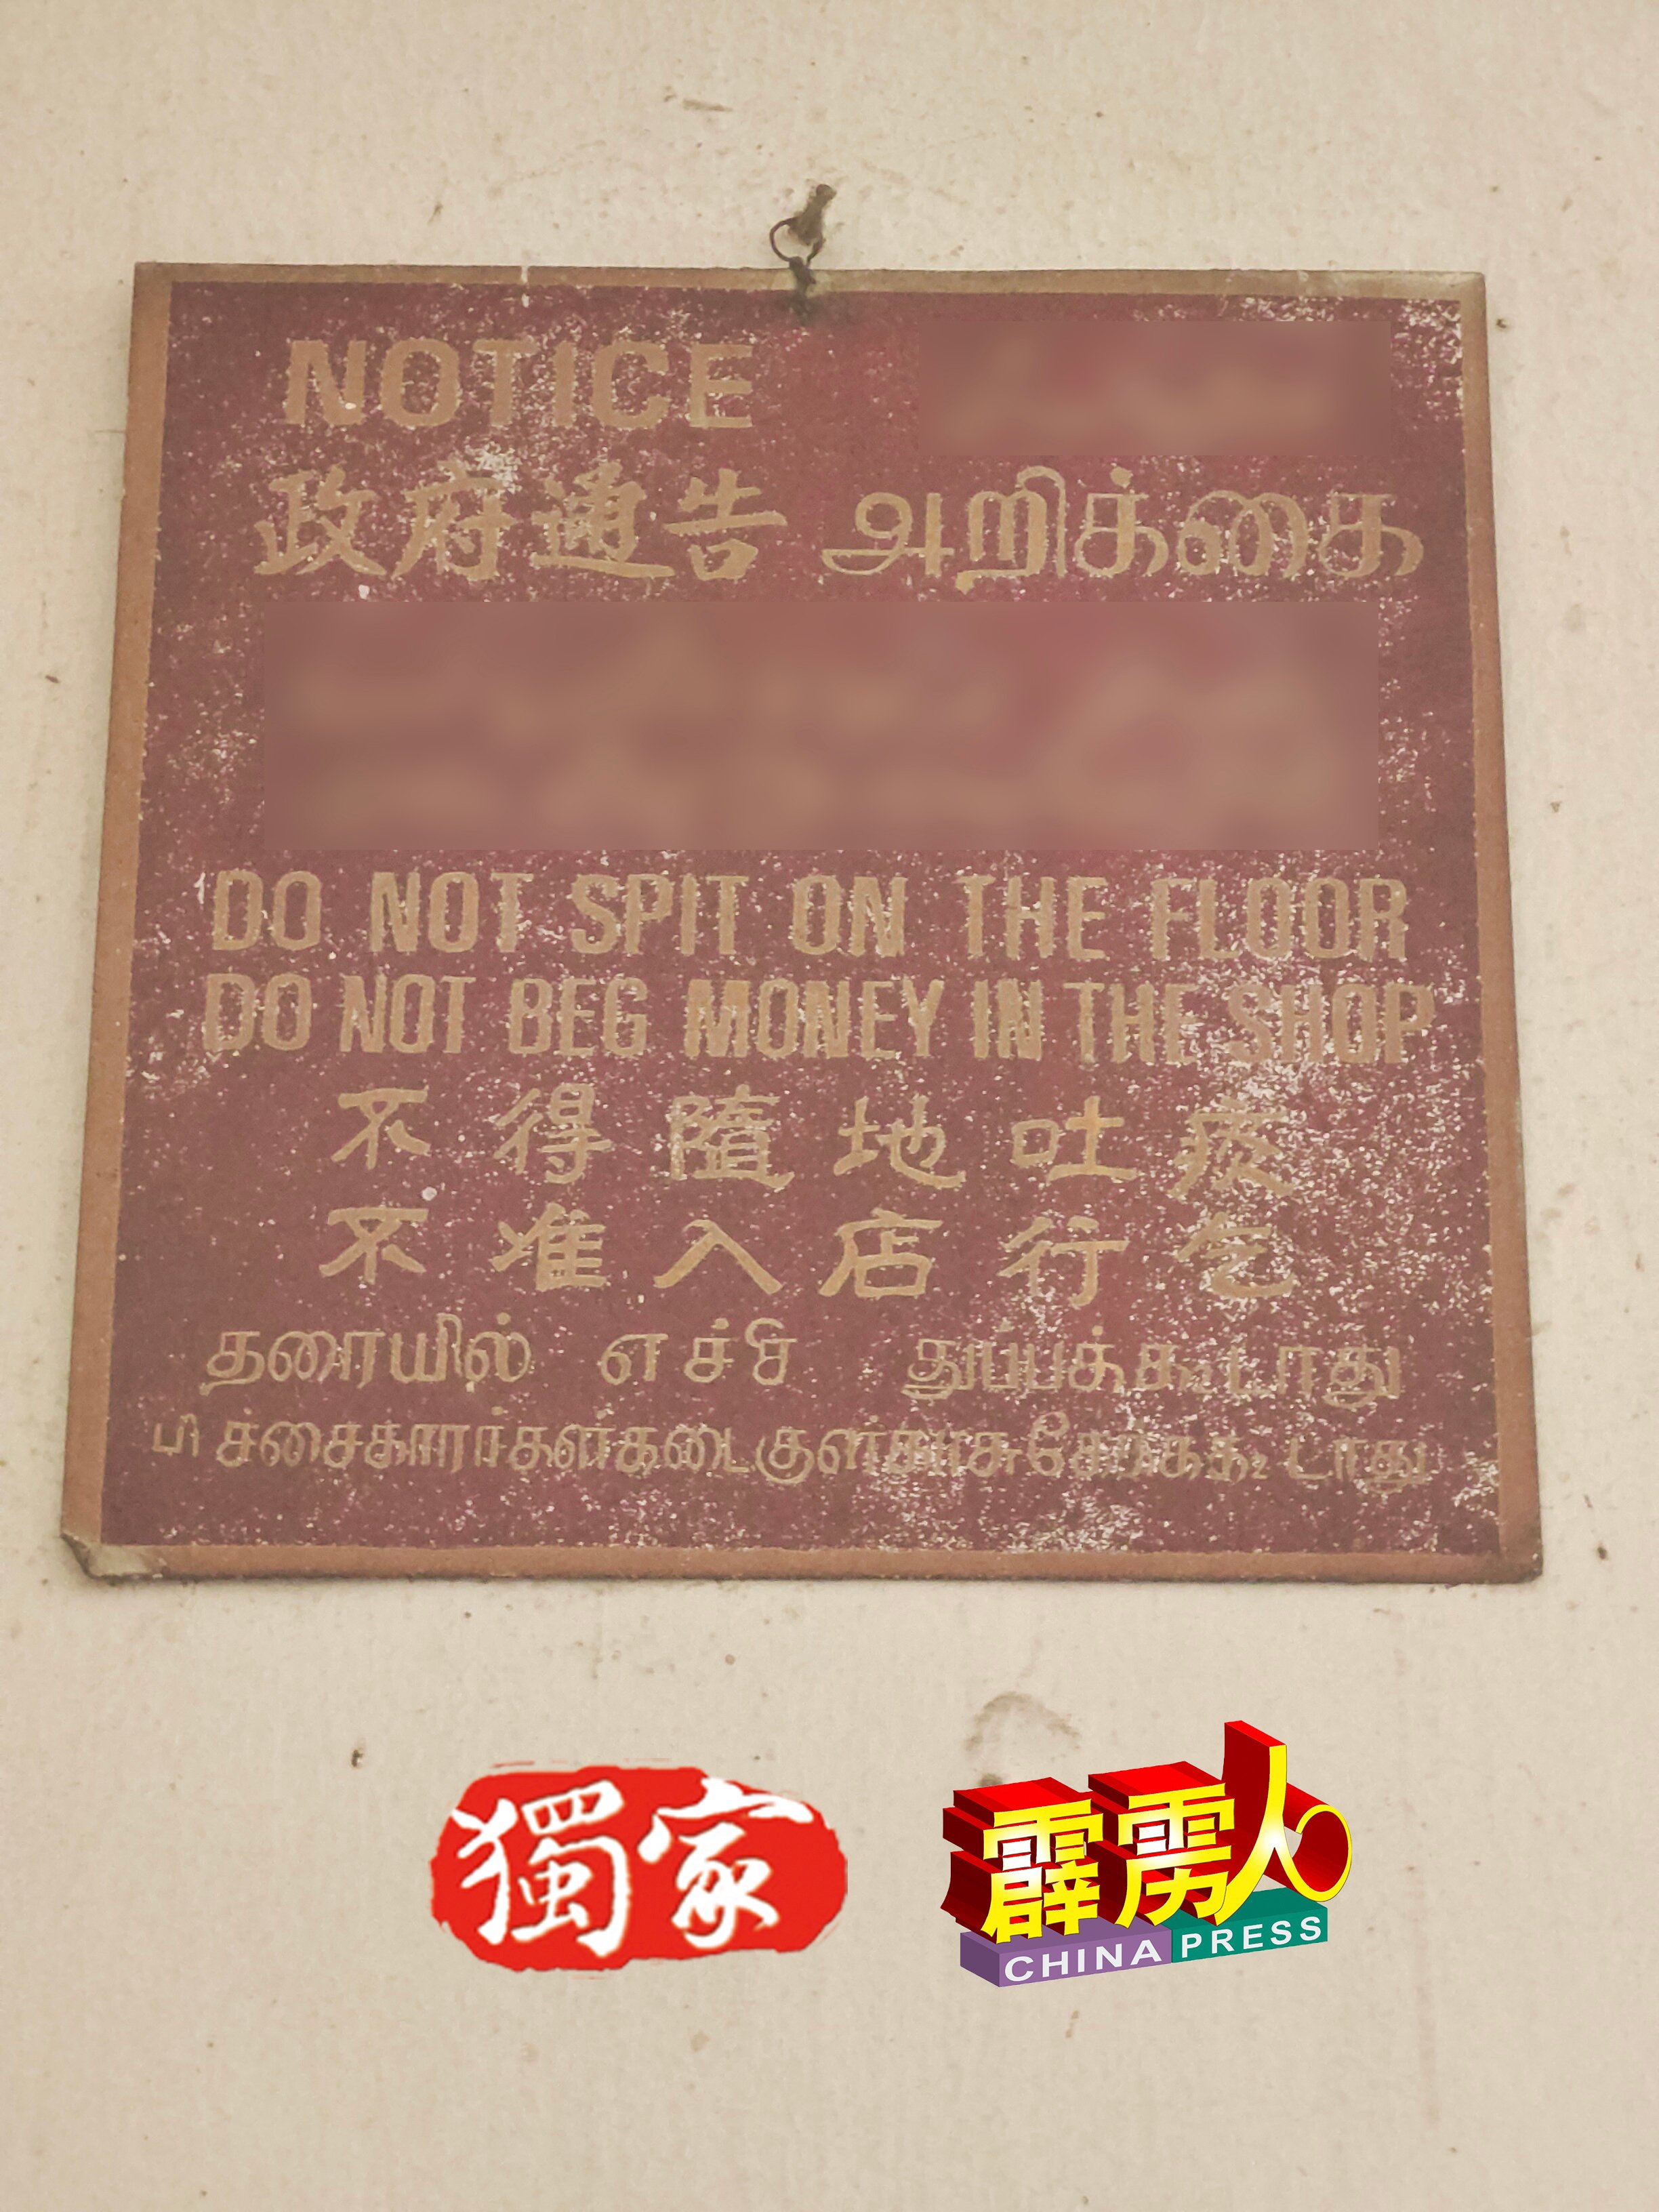 江沙悦来茶室壁上挂着的通告，用4种语文写下：不得随地吐痰，不准入店行乞。